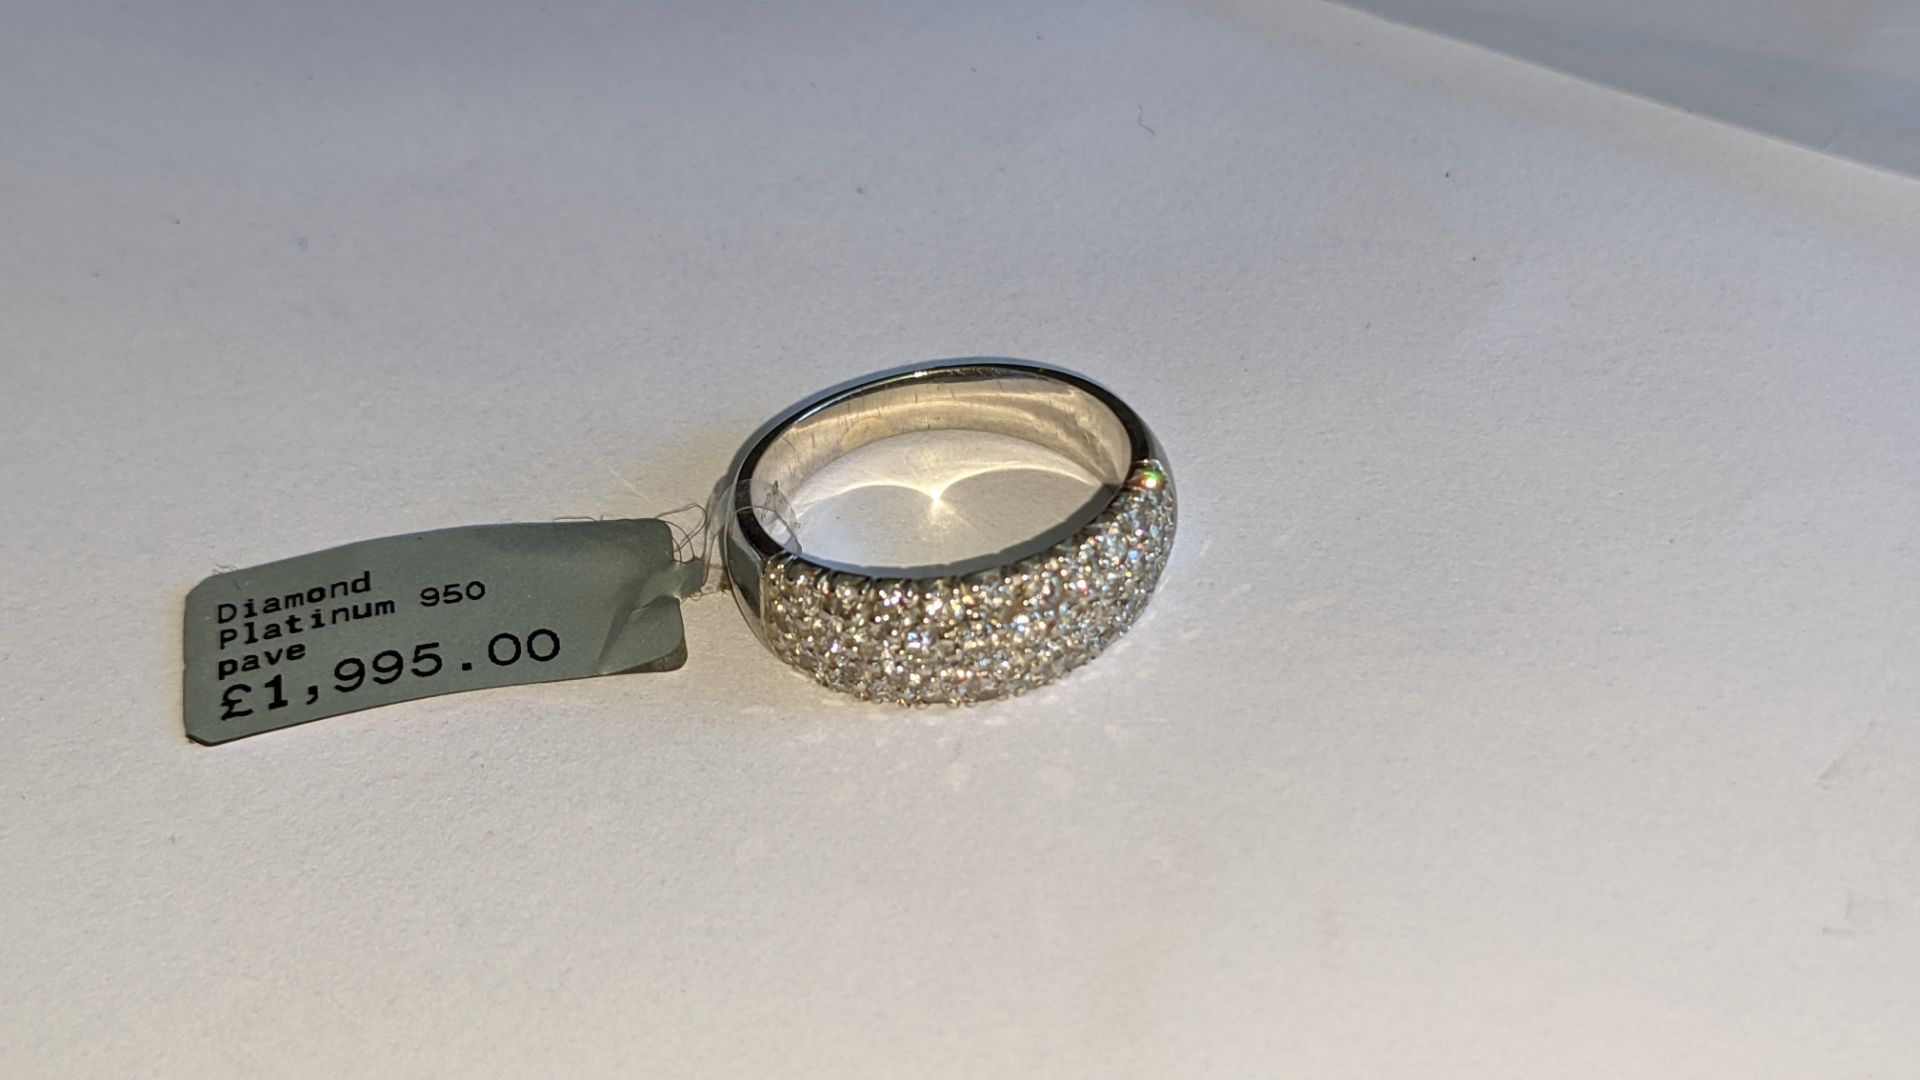 Platinum 950 & pave diamond ring. RRP £1,995 - Image 9 of 19